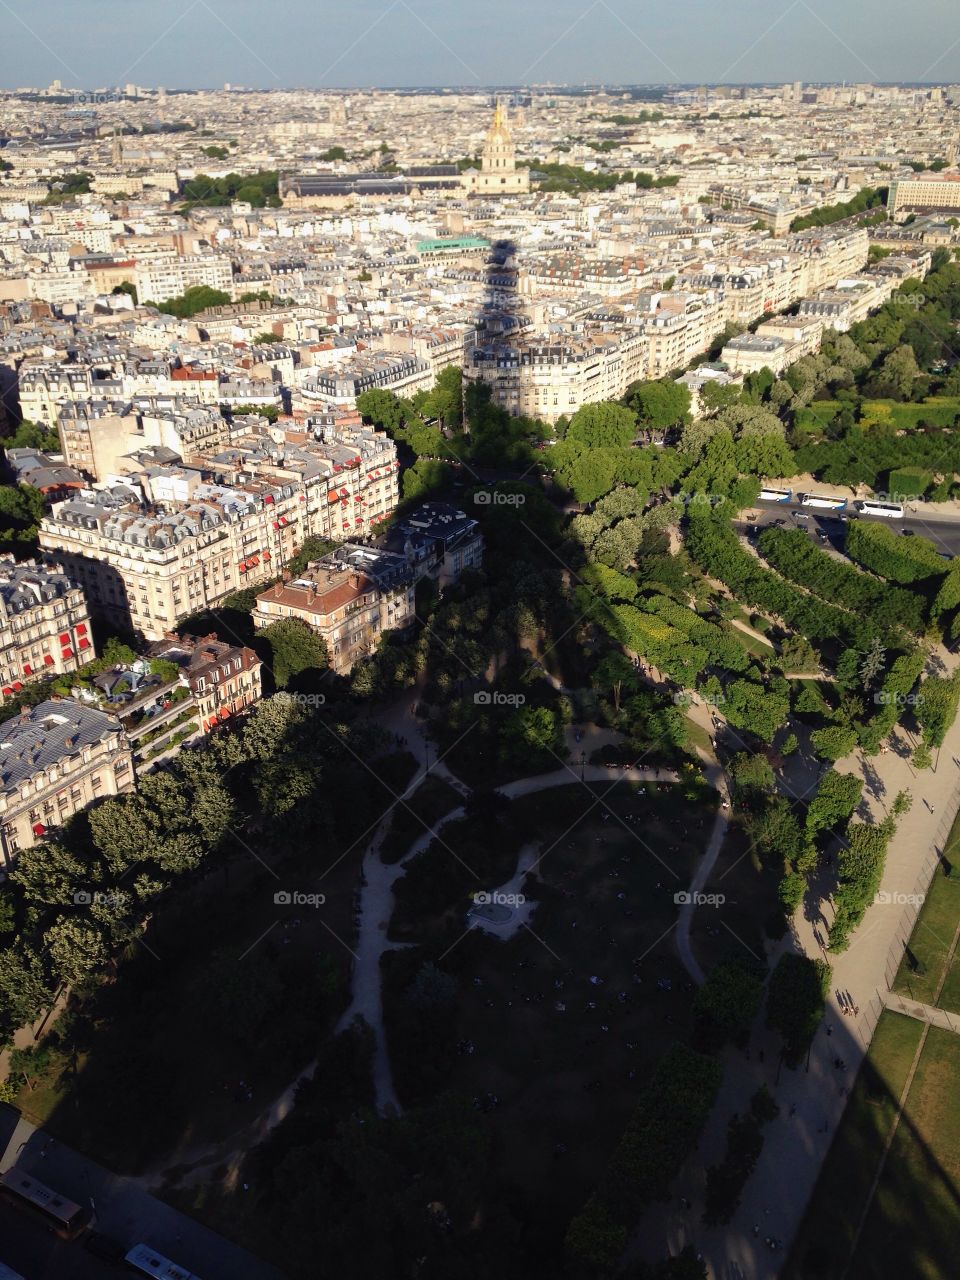 Eiffel Shadow